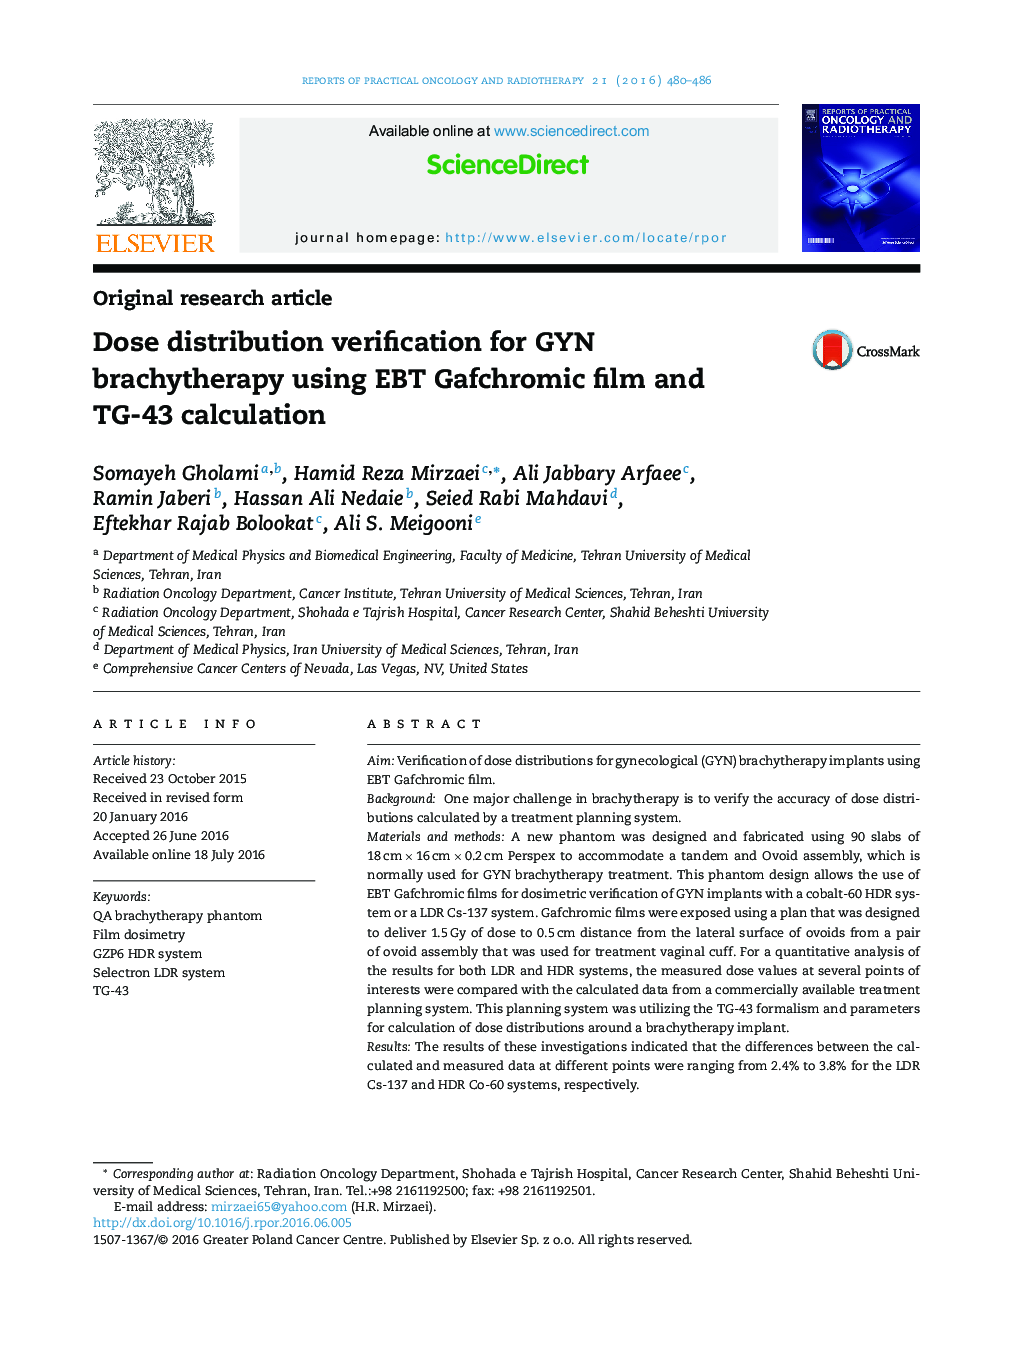 تایید توزیع دوز برای براکی تراپی GYN با استفاده از فیلم EBT Gafchromic و محاسبه TG-43 